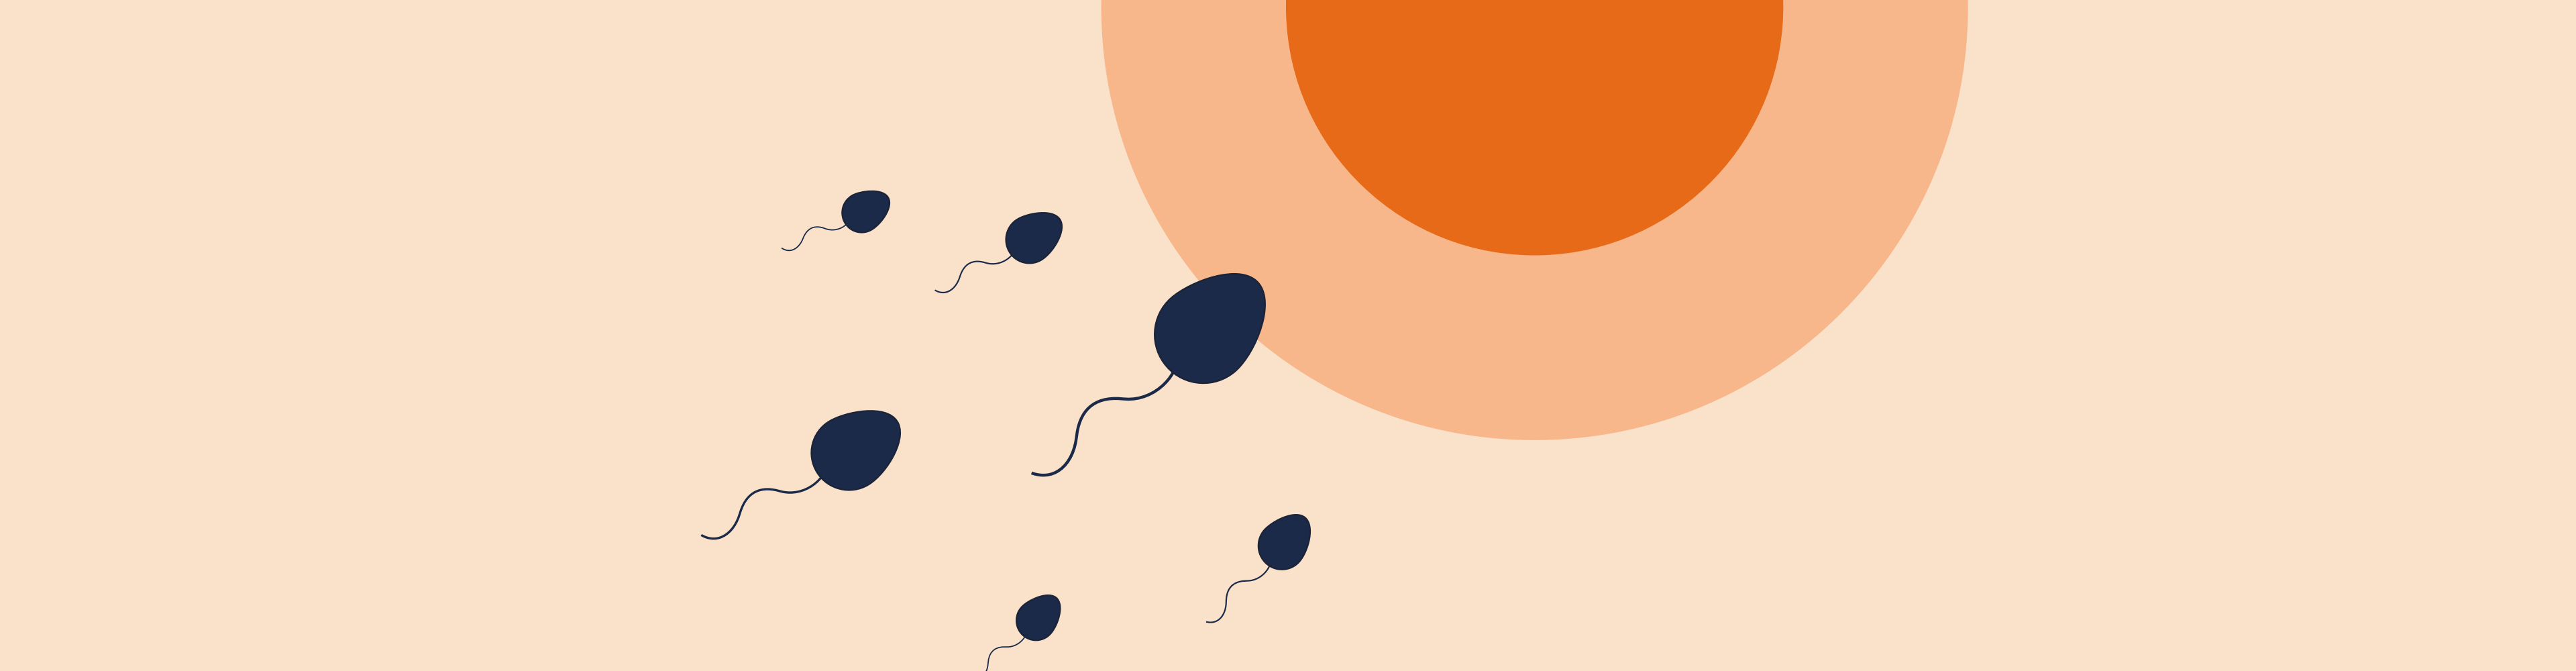 Fertilisation 101: How Pregnancy Happens Biologically